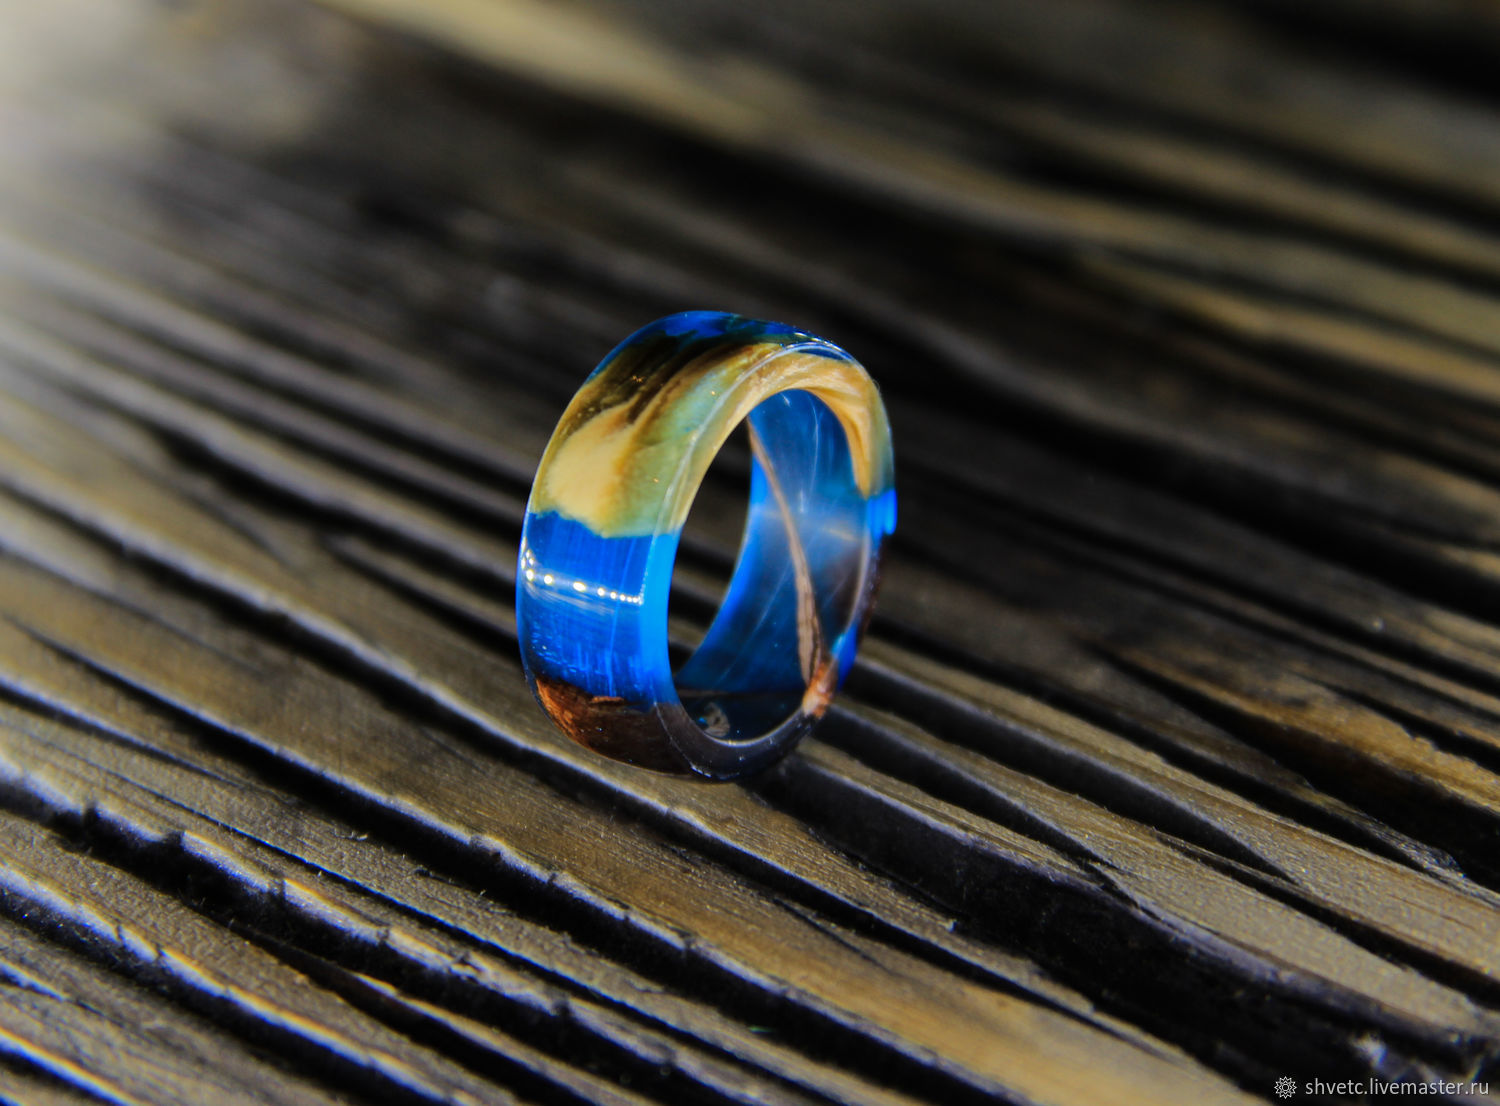 Кольца с синим золотом